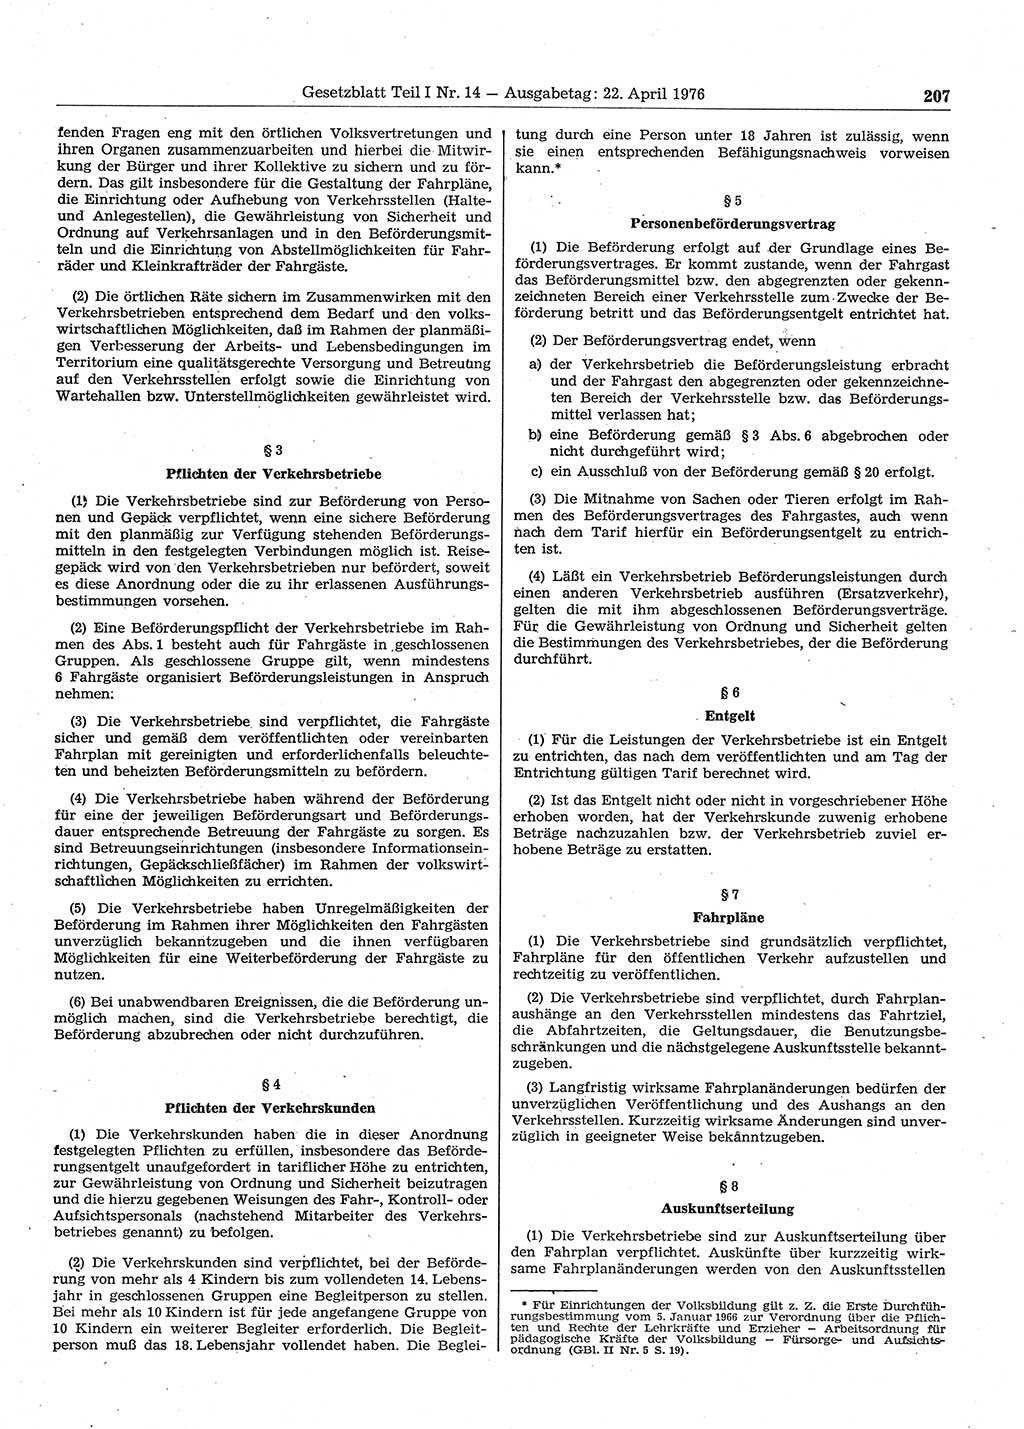 Gesetzblatt (GBl.) der Deutschen Demokratischen Republik (DDR) Teil Ⅰ 1976, Seite 207 (GBl. DDR Ⅰ 1976, S. 207)